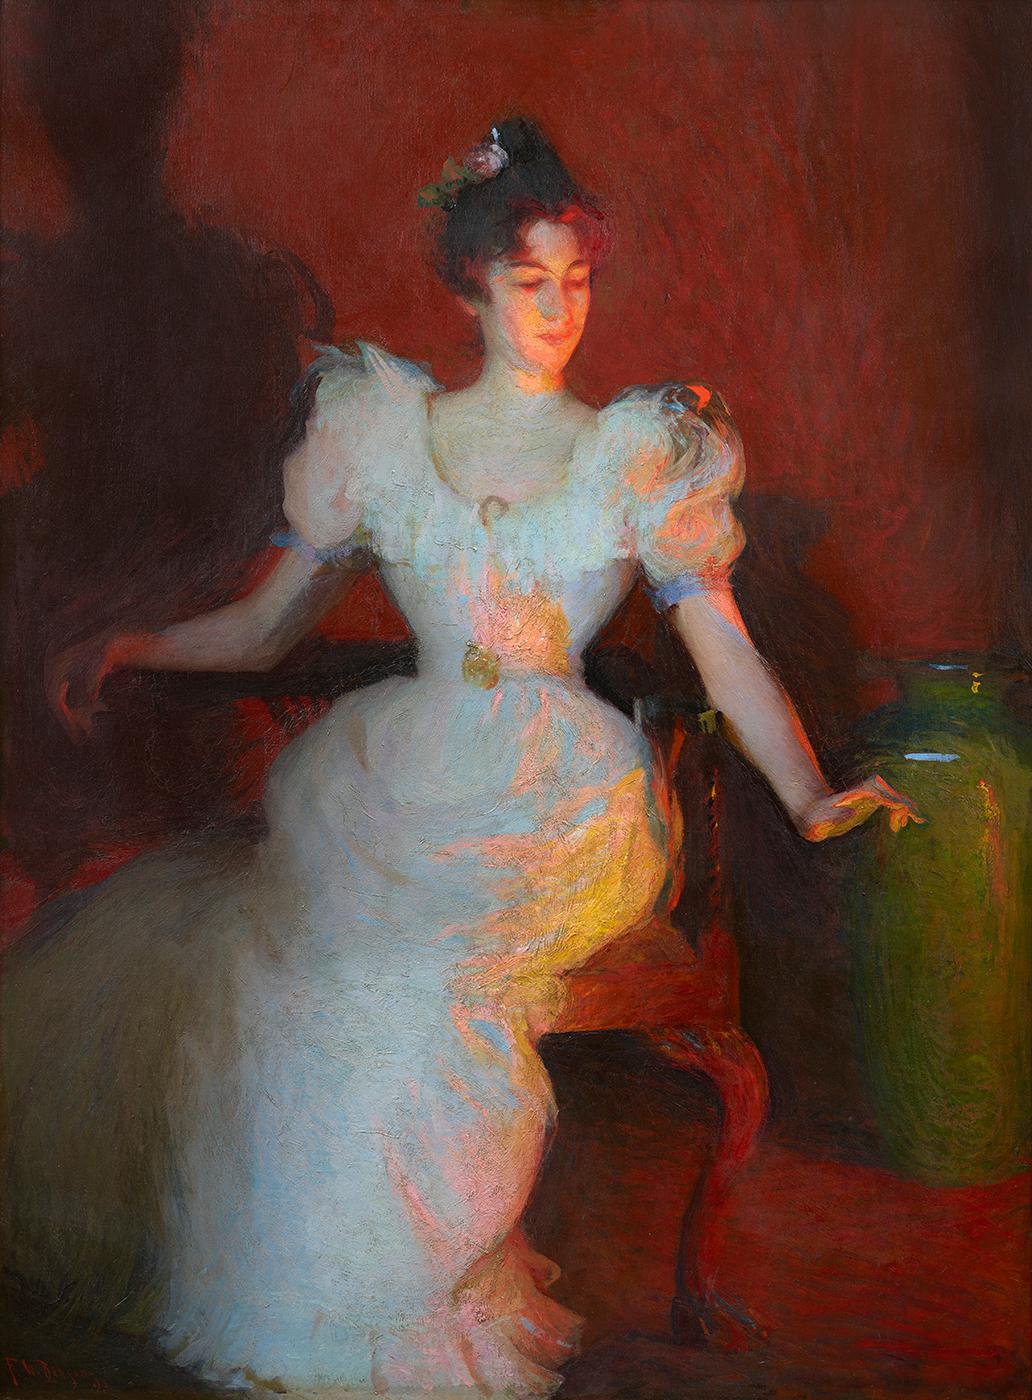 Firelight, 1893